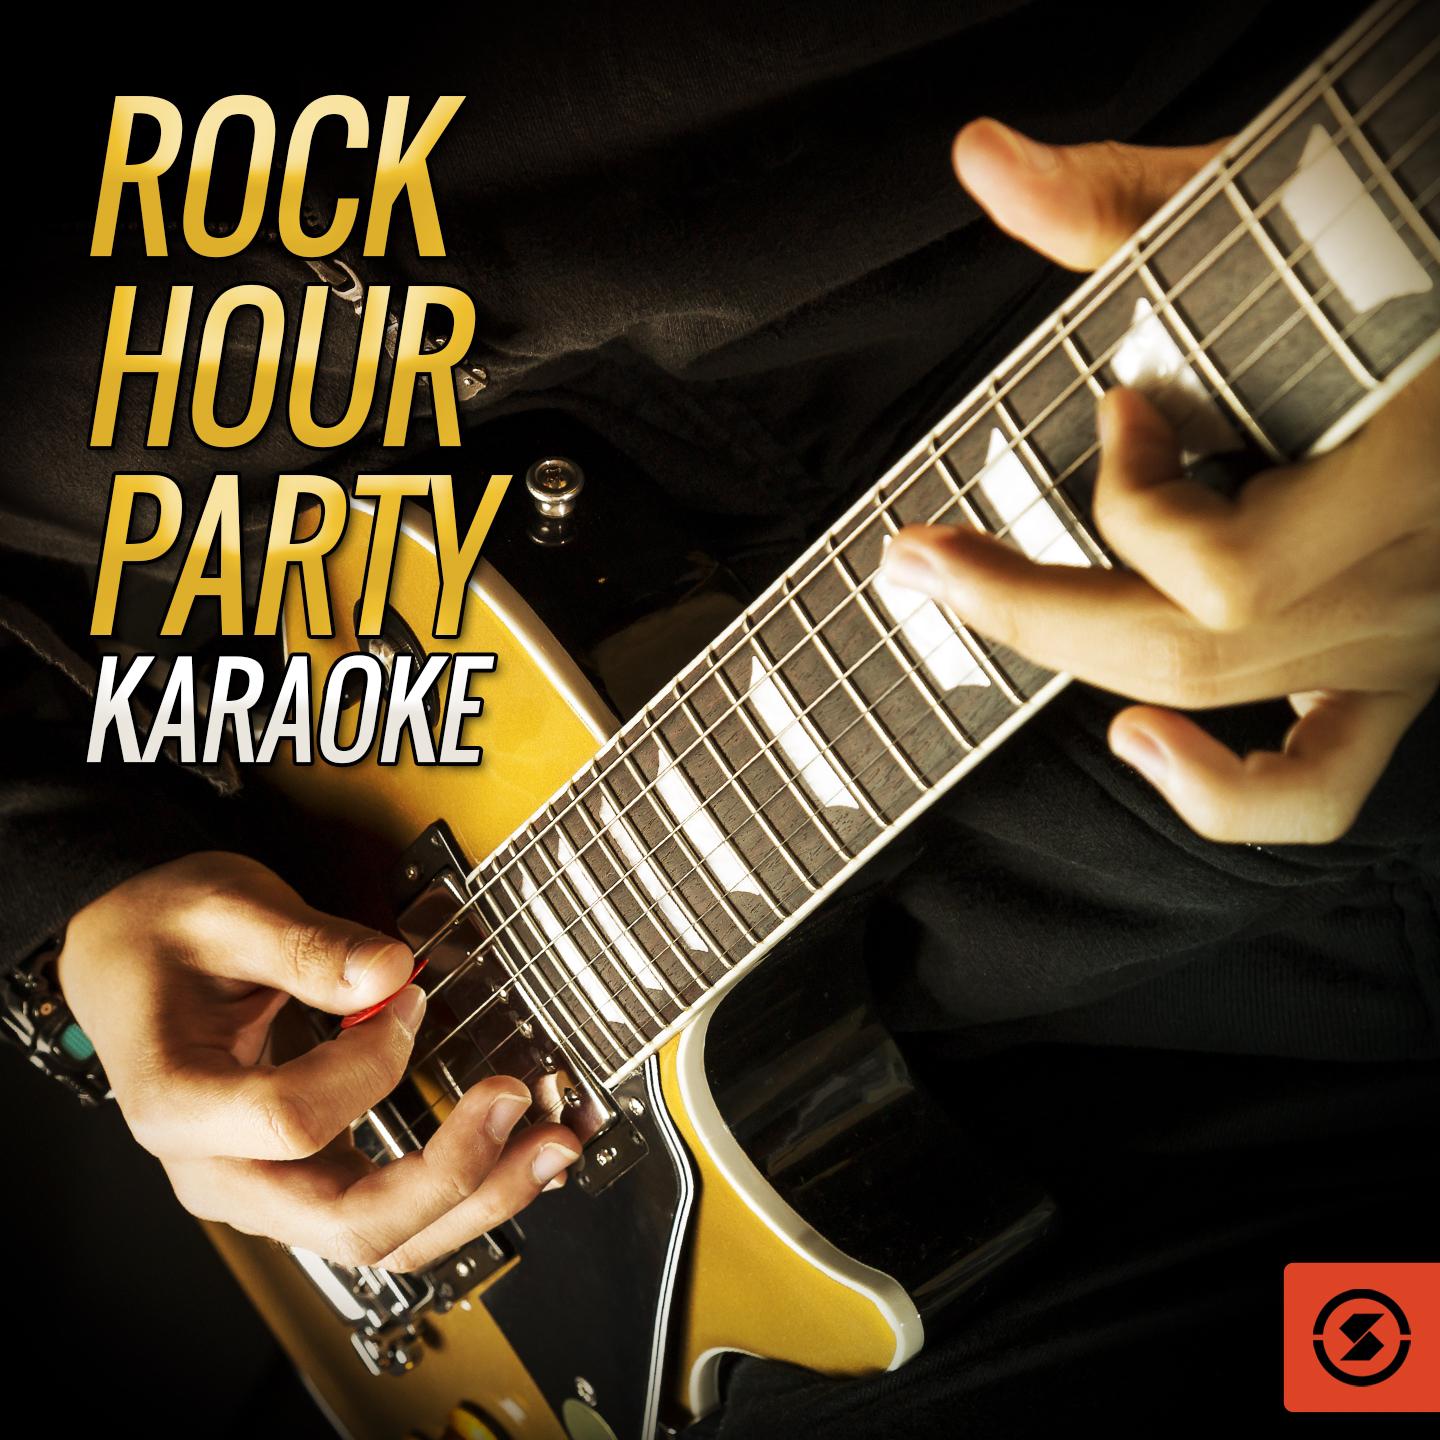 Rock Hour Party Karaoke